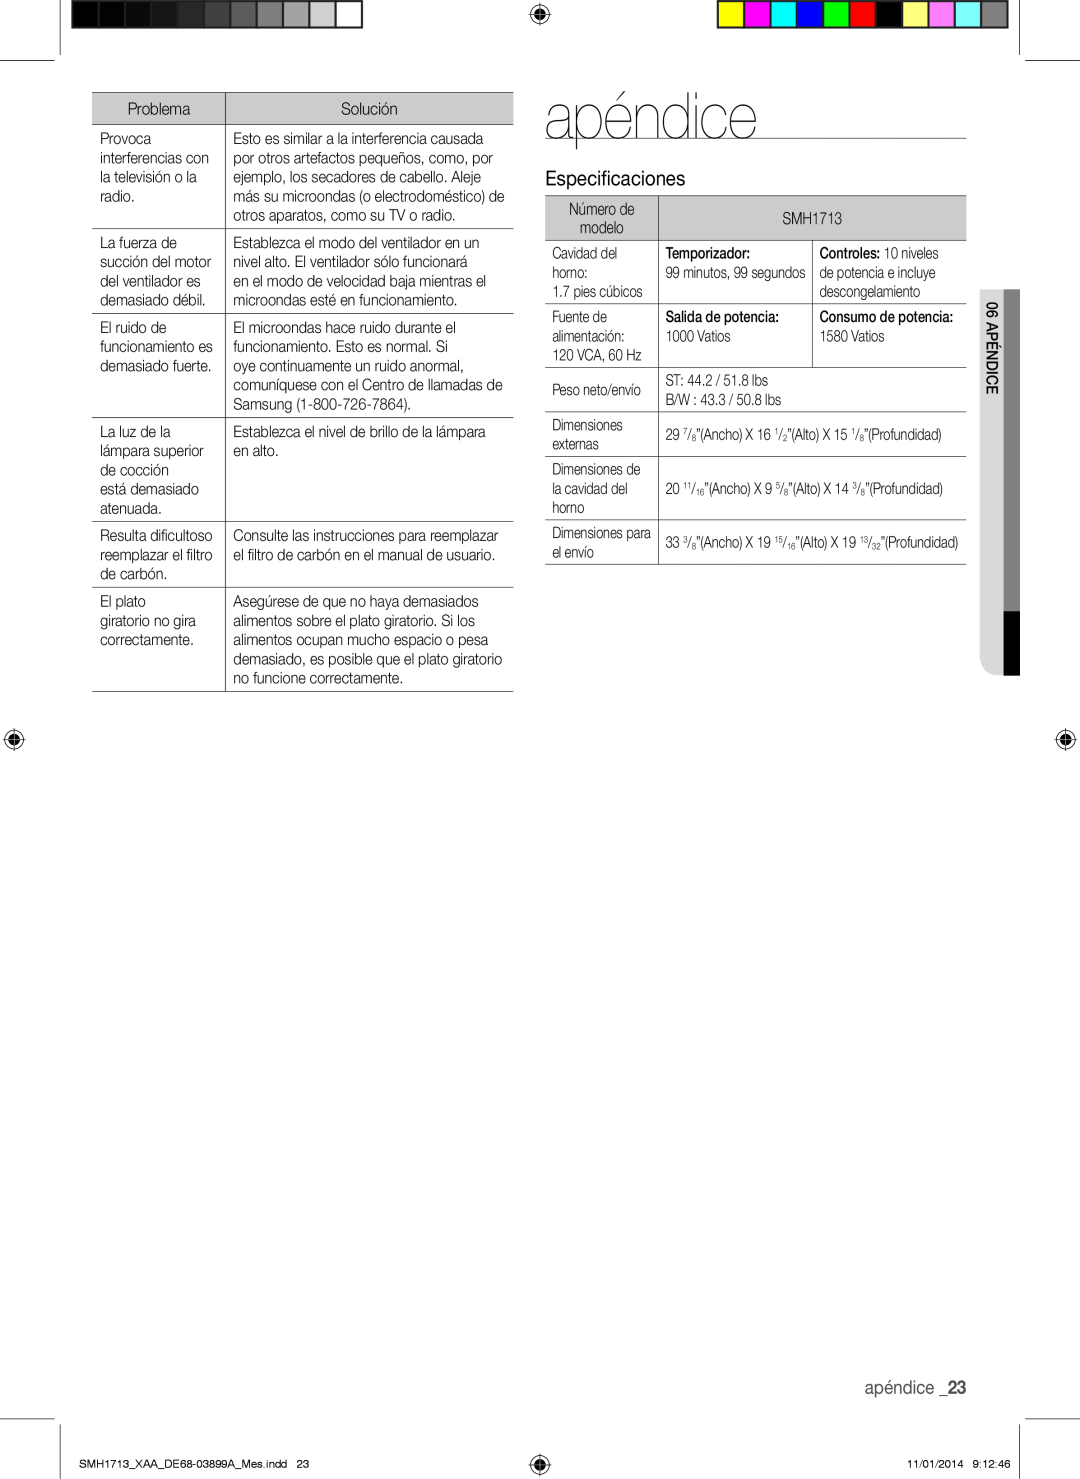 Samsung SMH1713 user manual apéndice, Especificaciones 